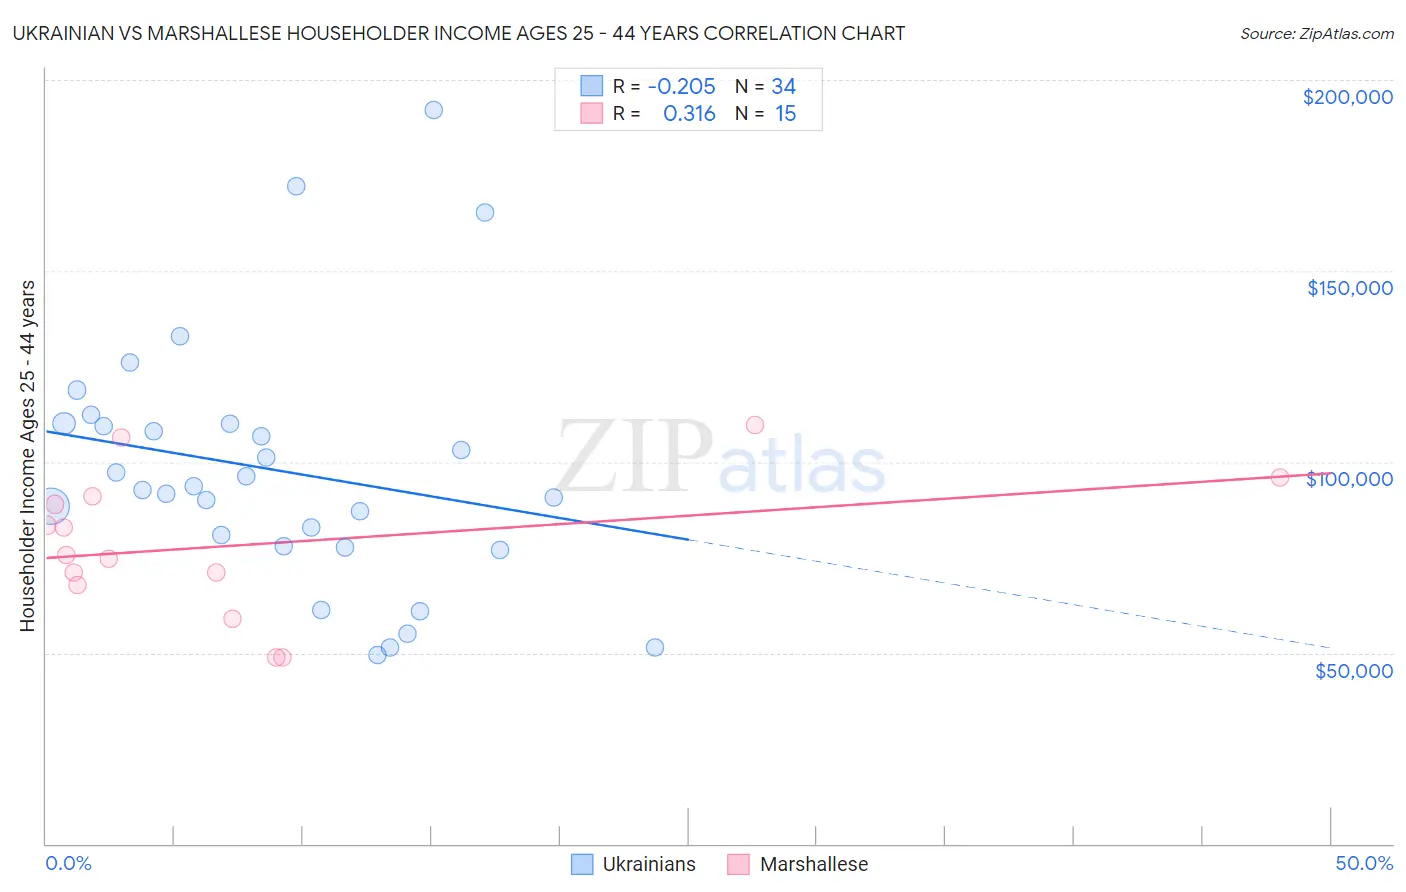 Ukrainian vs Marshallese Householder Income Ages 25 - 44 years